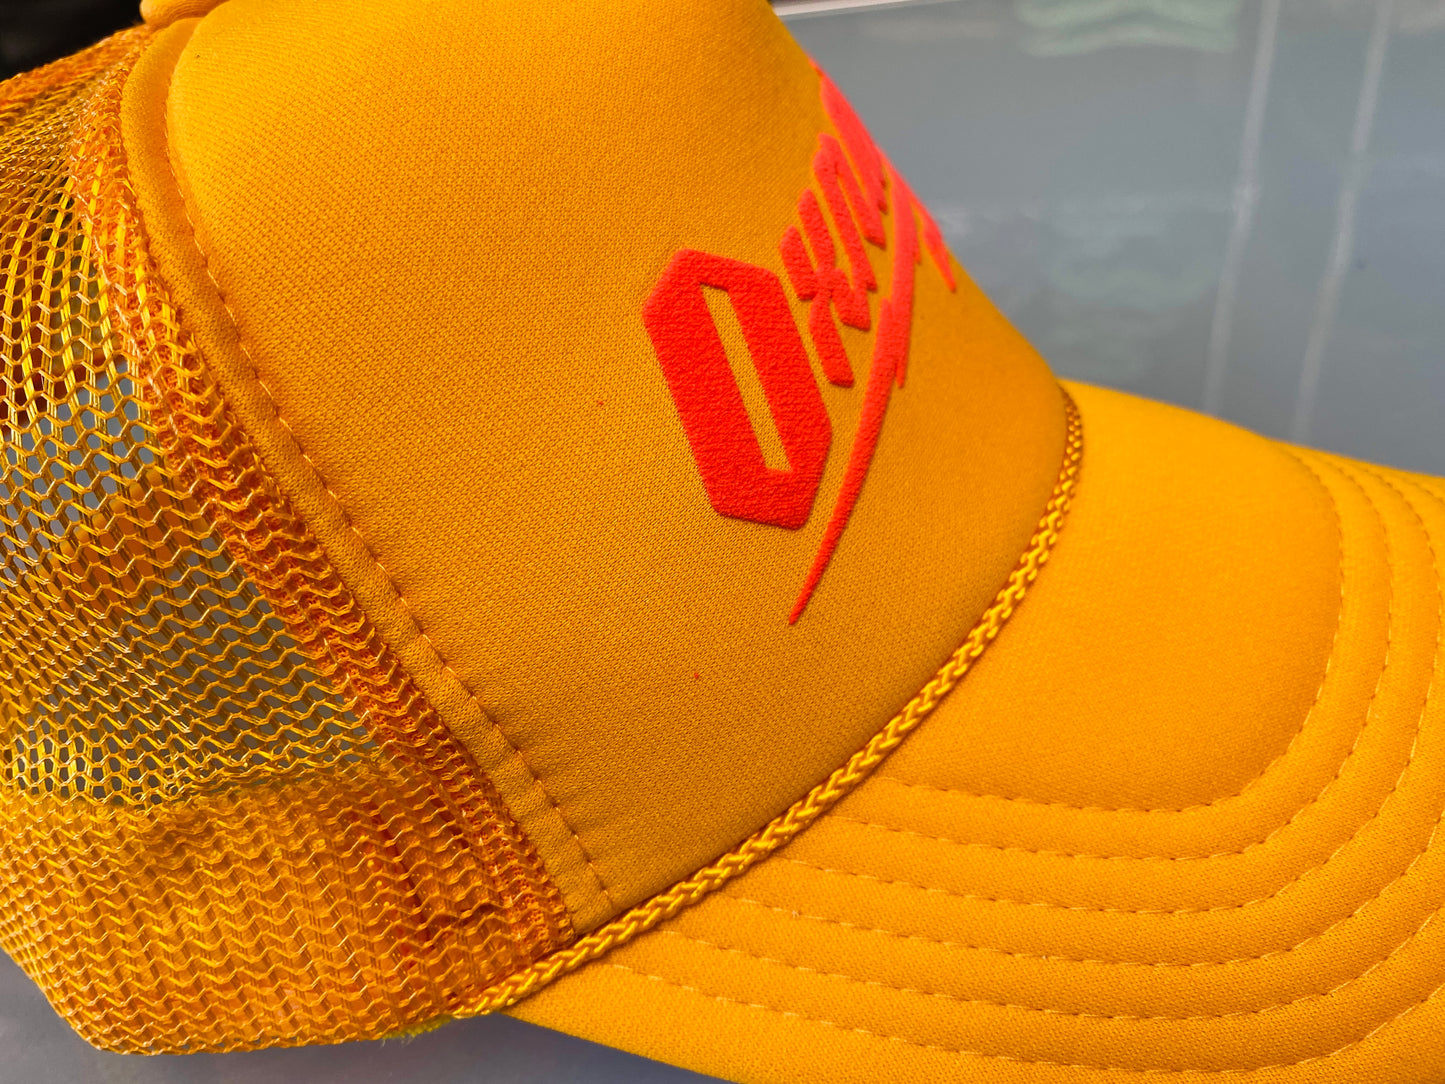 Oxnard Bolt Yellow trucker hat